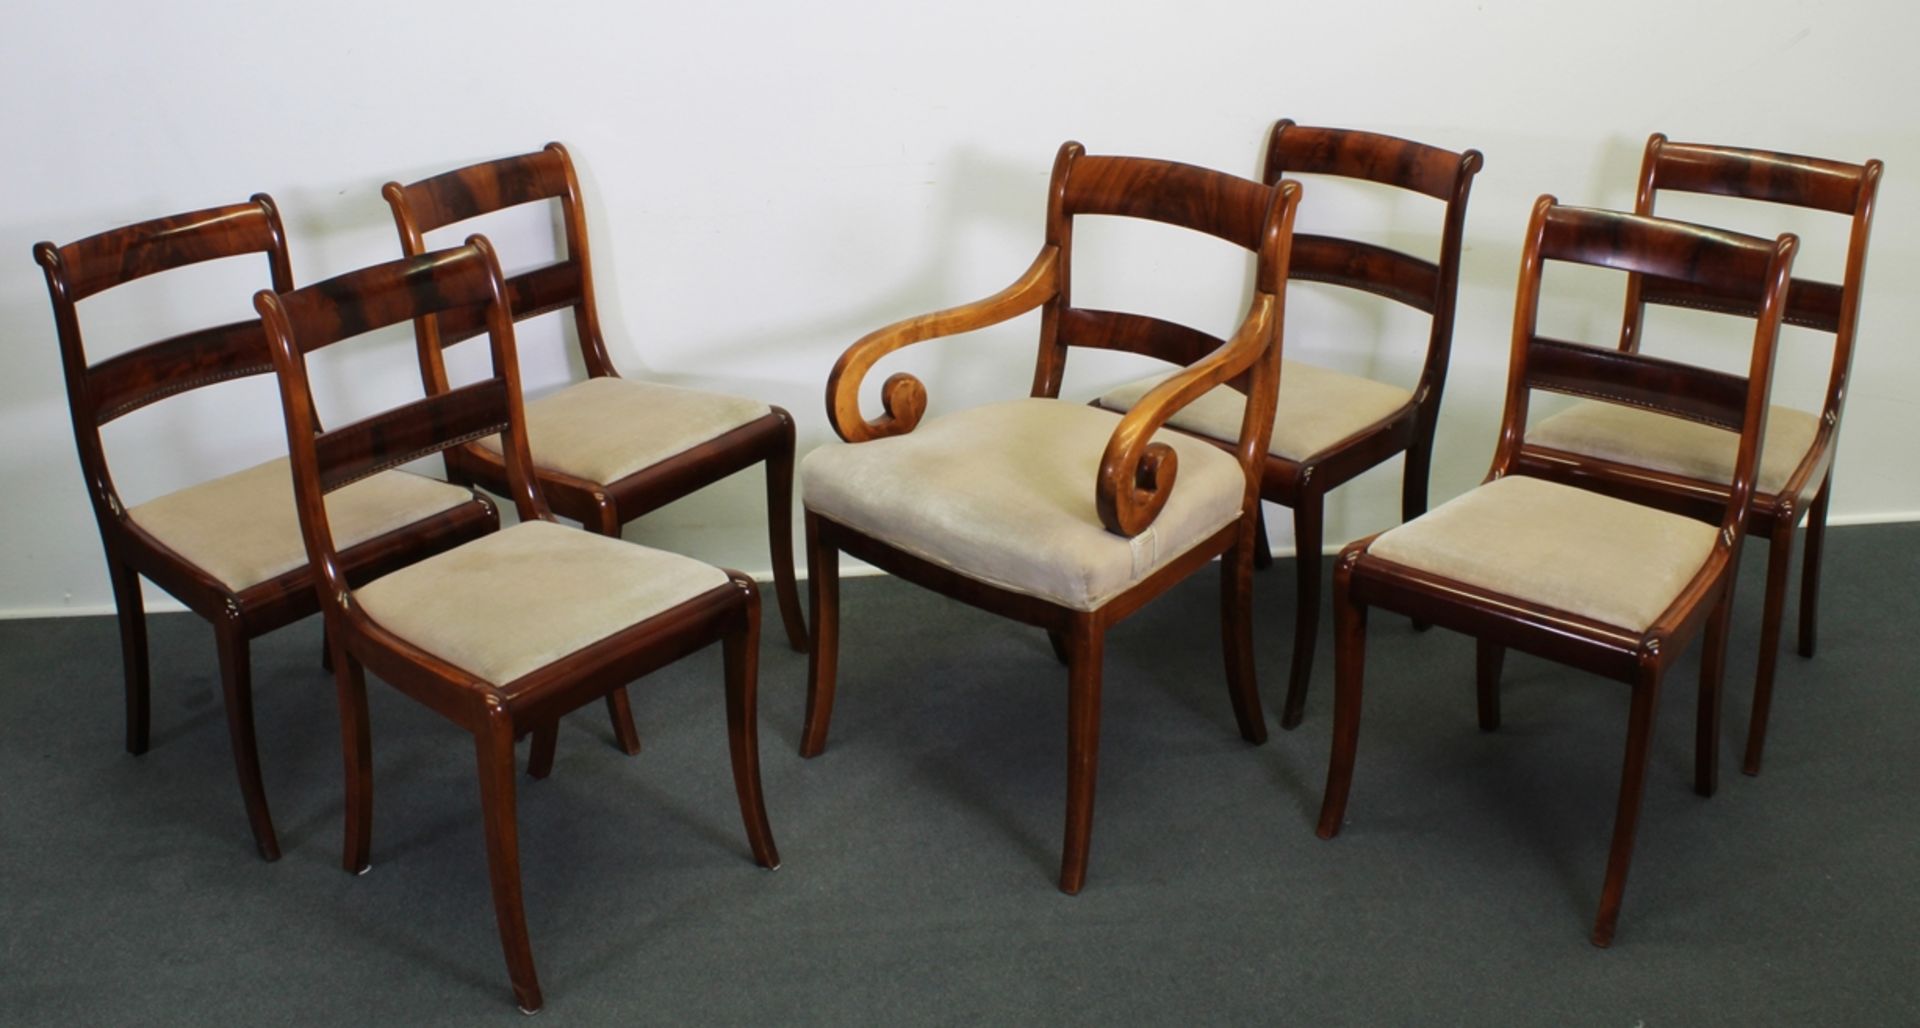 7 Stühle, davon ein Armlehnstuhl, Biedermeier um 1825, wohl norddeutsch, Mahagoni, Sitzpolster mit 